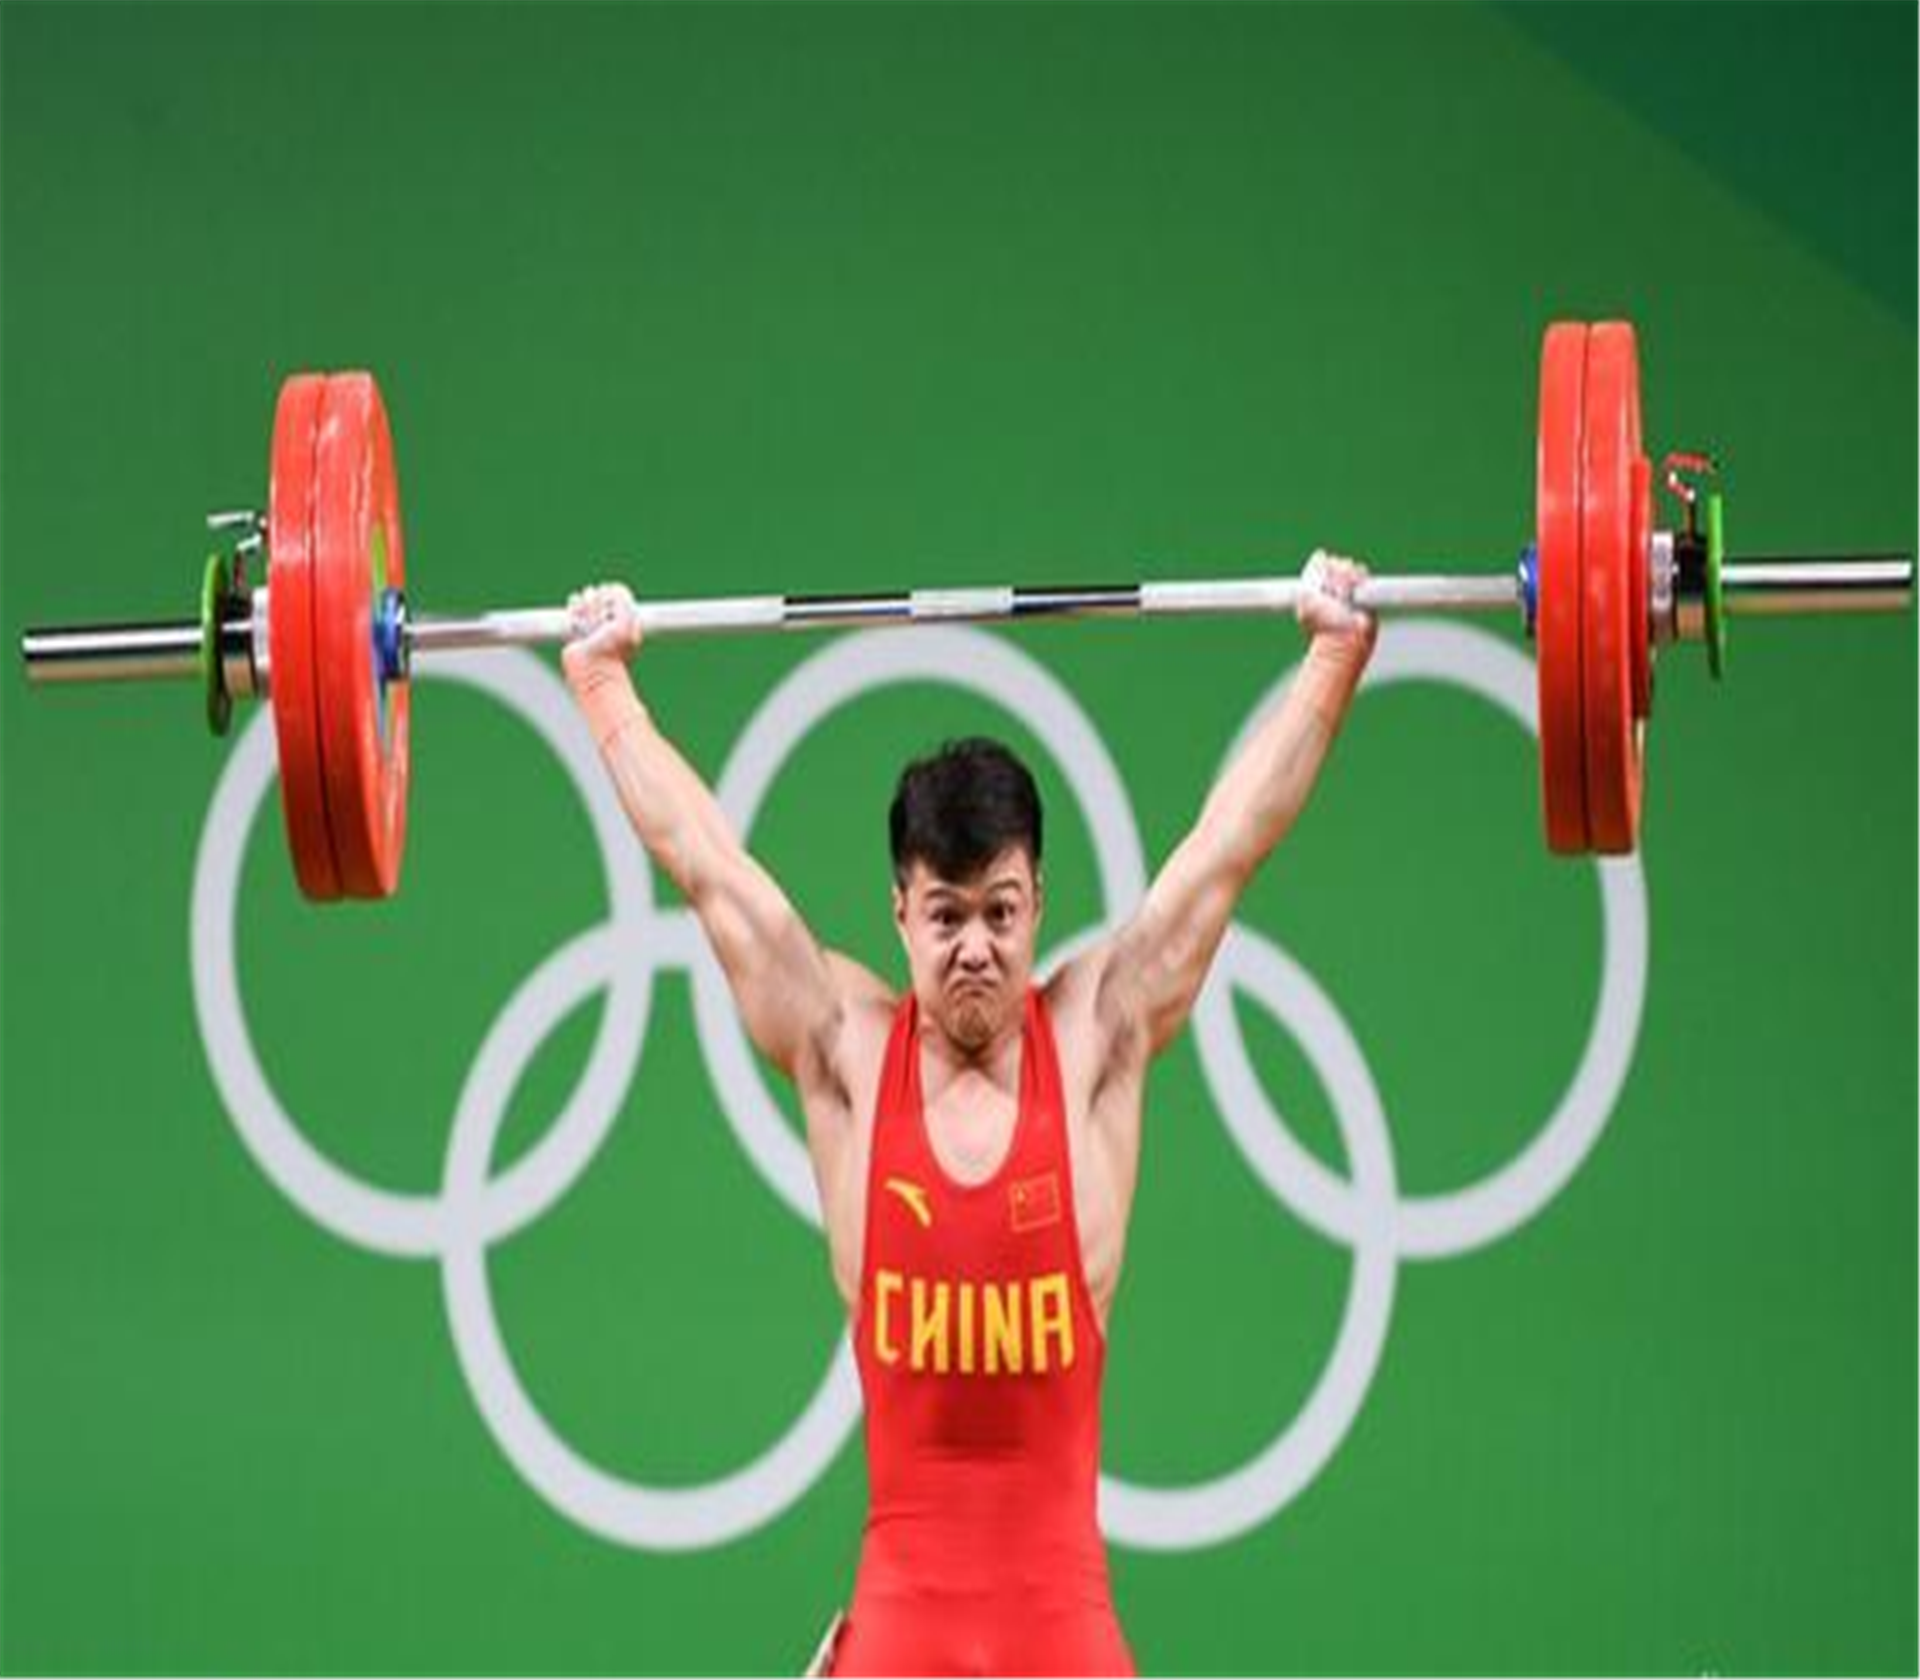 16年奥运会举重中国运动员龙清泉图片下载